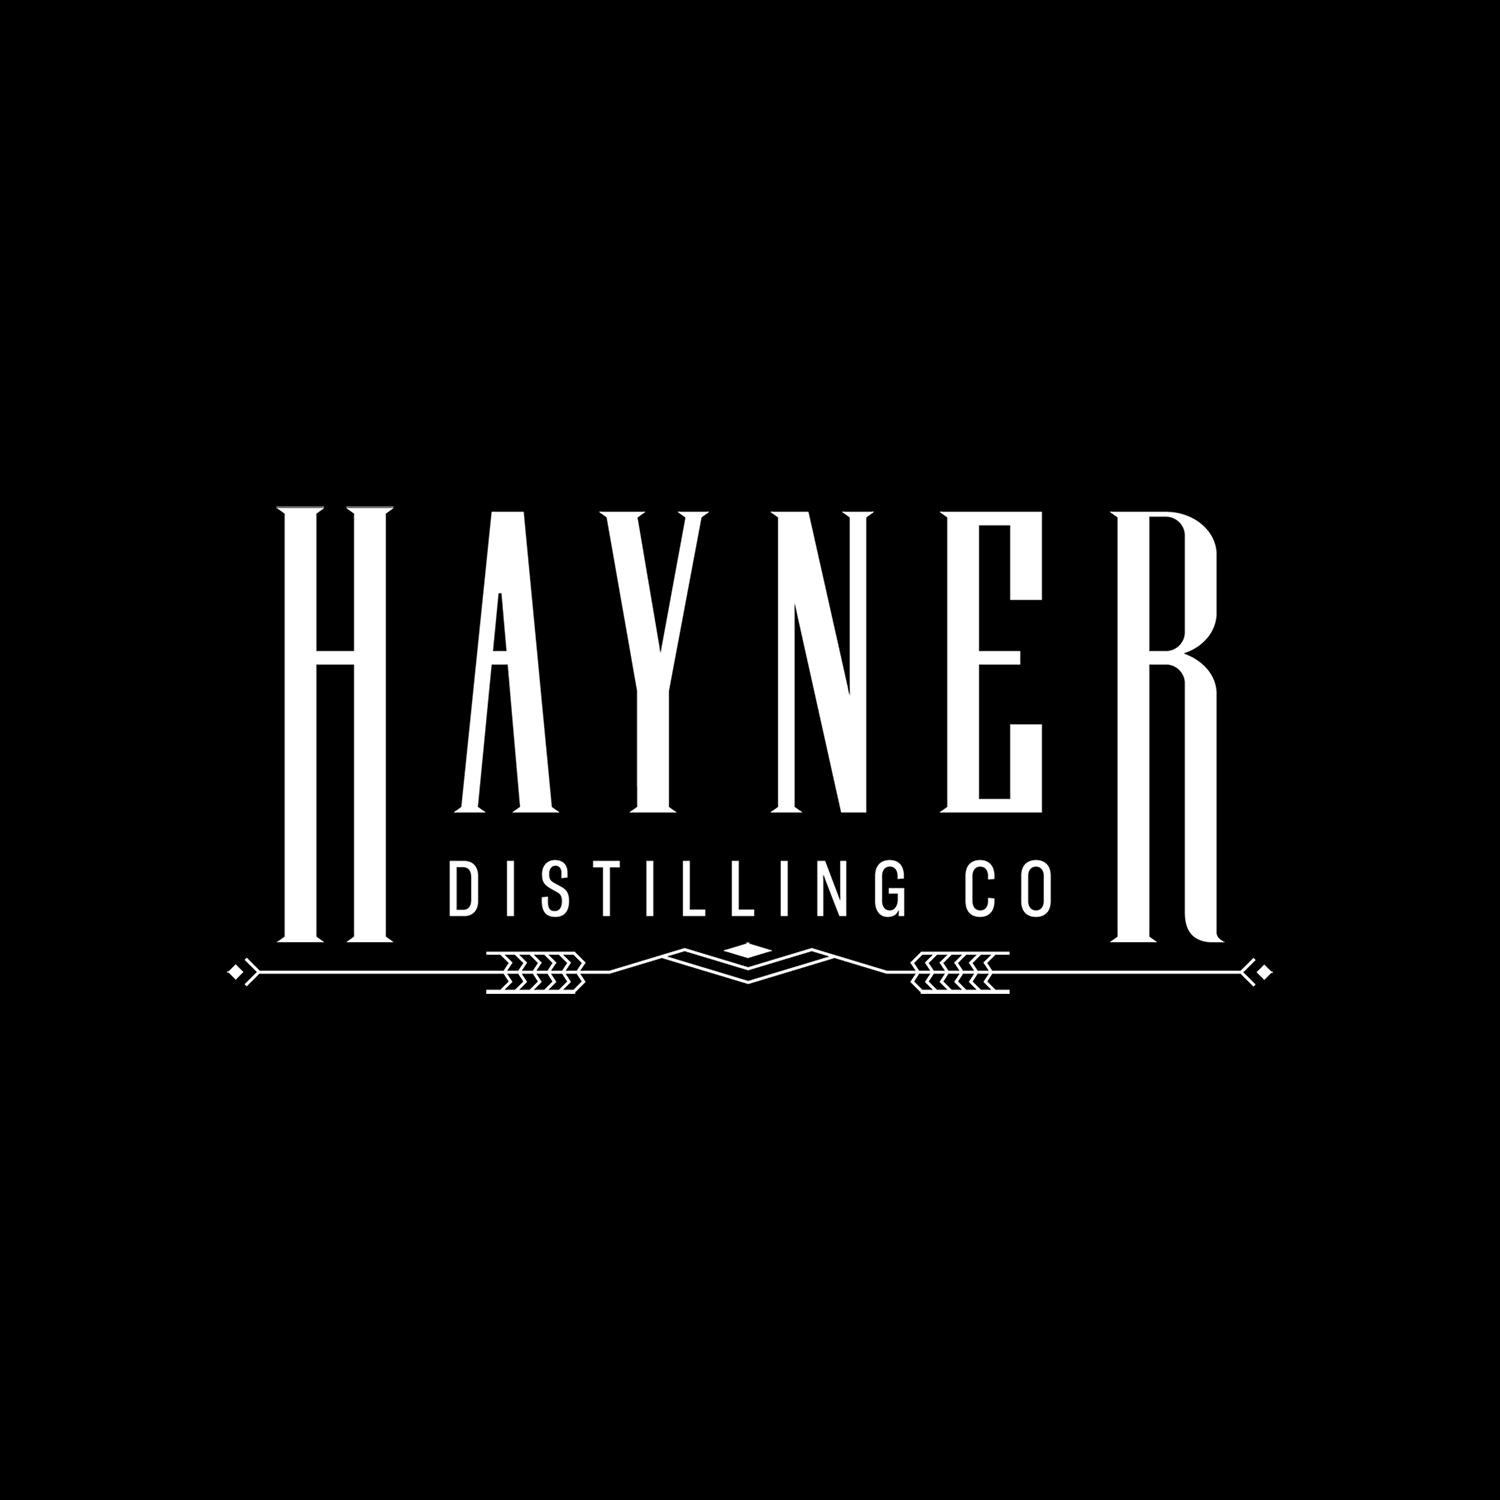 Hayner Distilling Co. logo